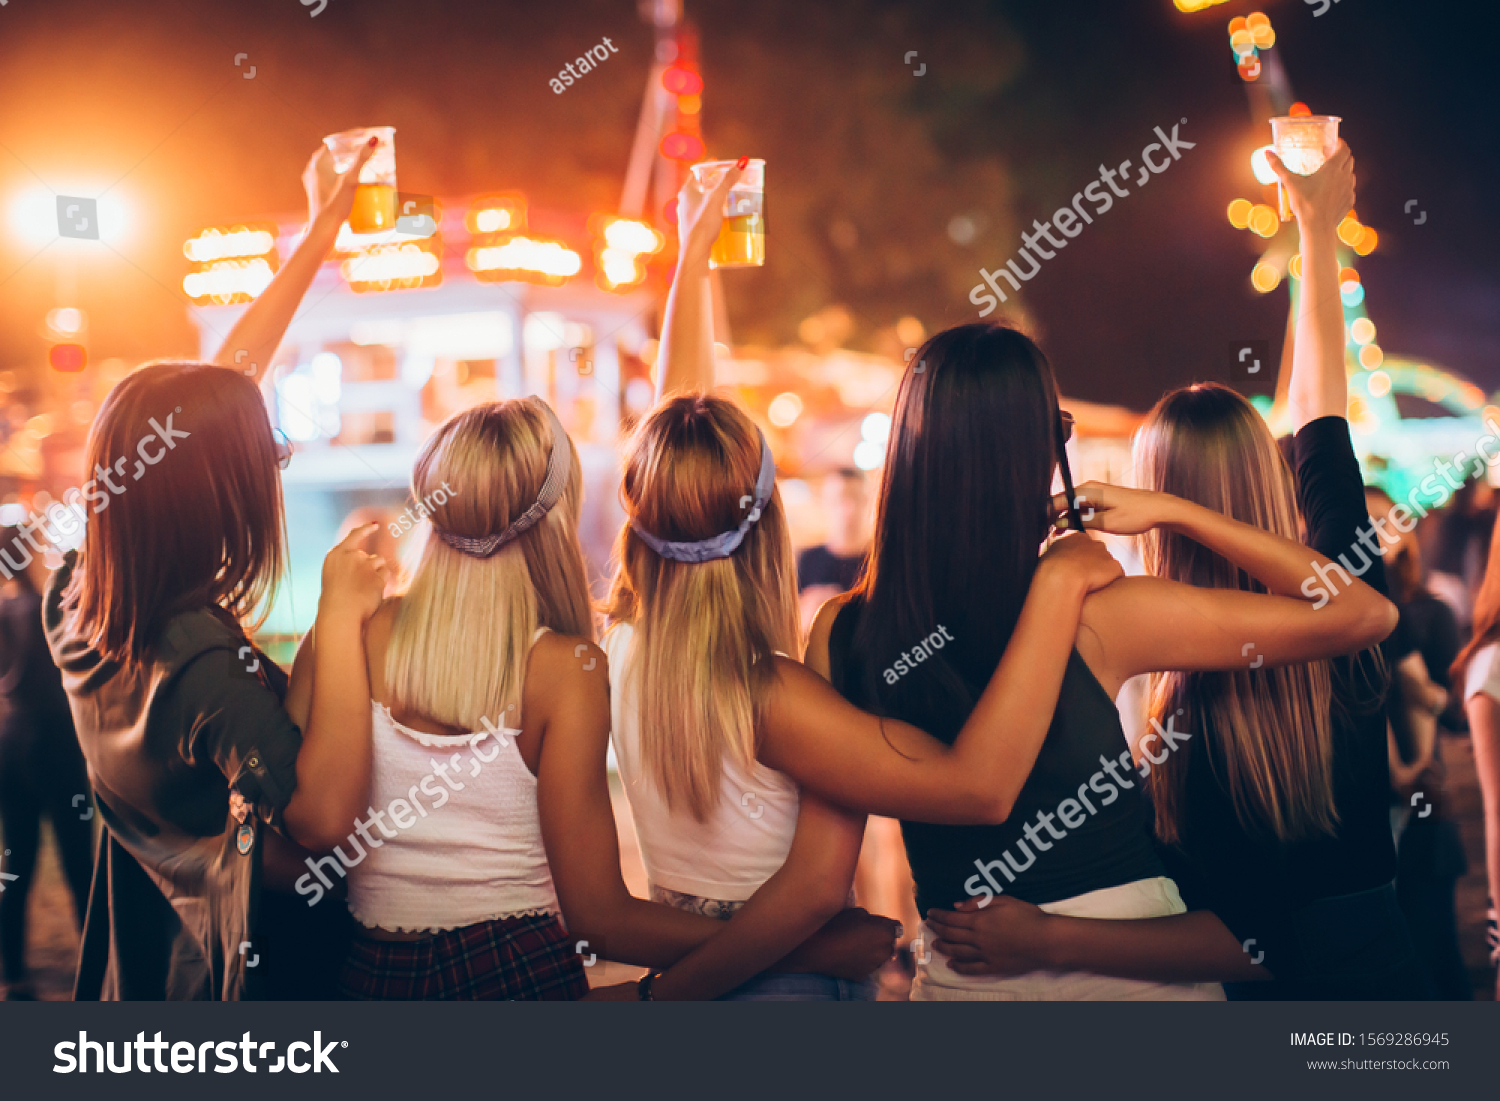 Back View Group Girls Having Fun Foto De Stock 1569286945 Shutterstock 